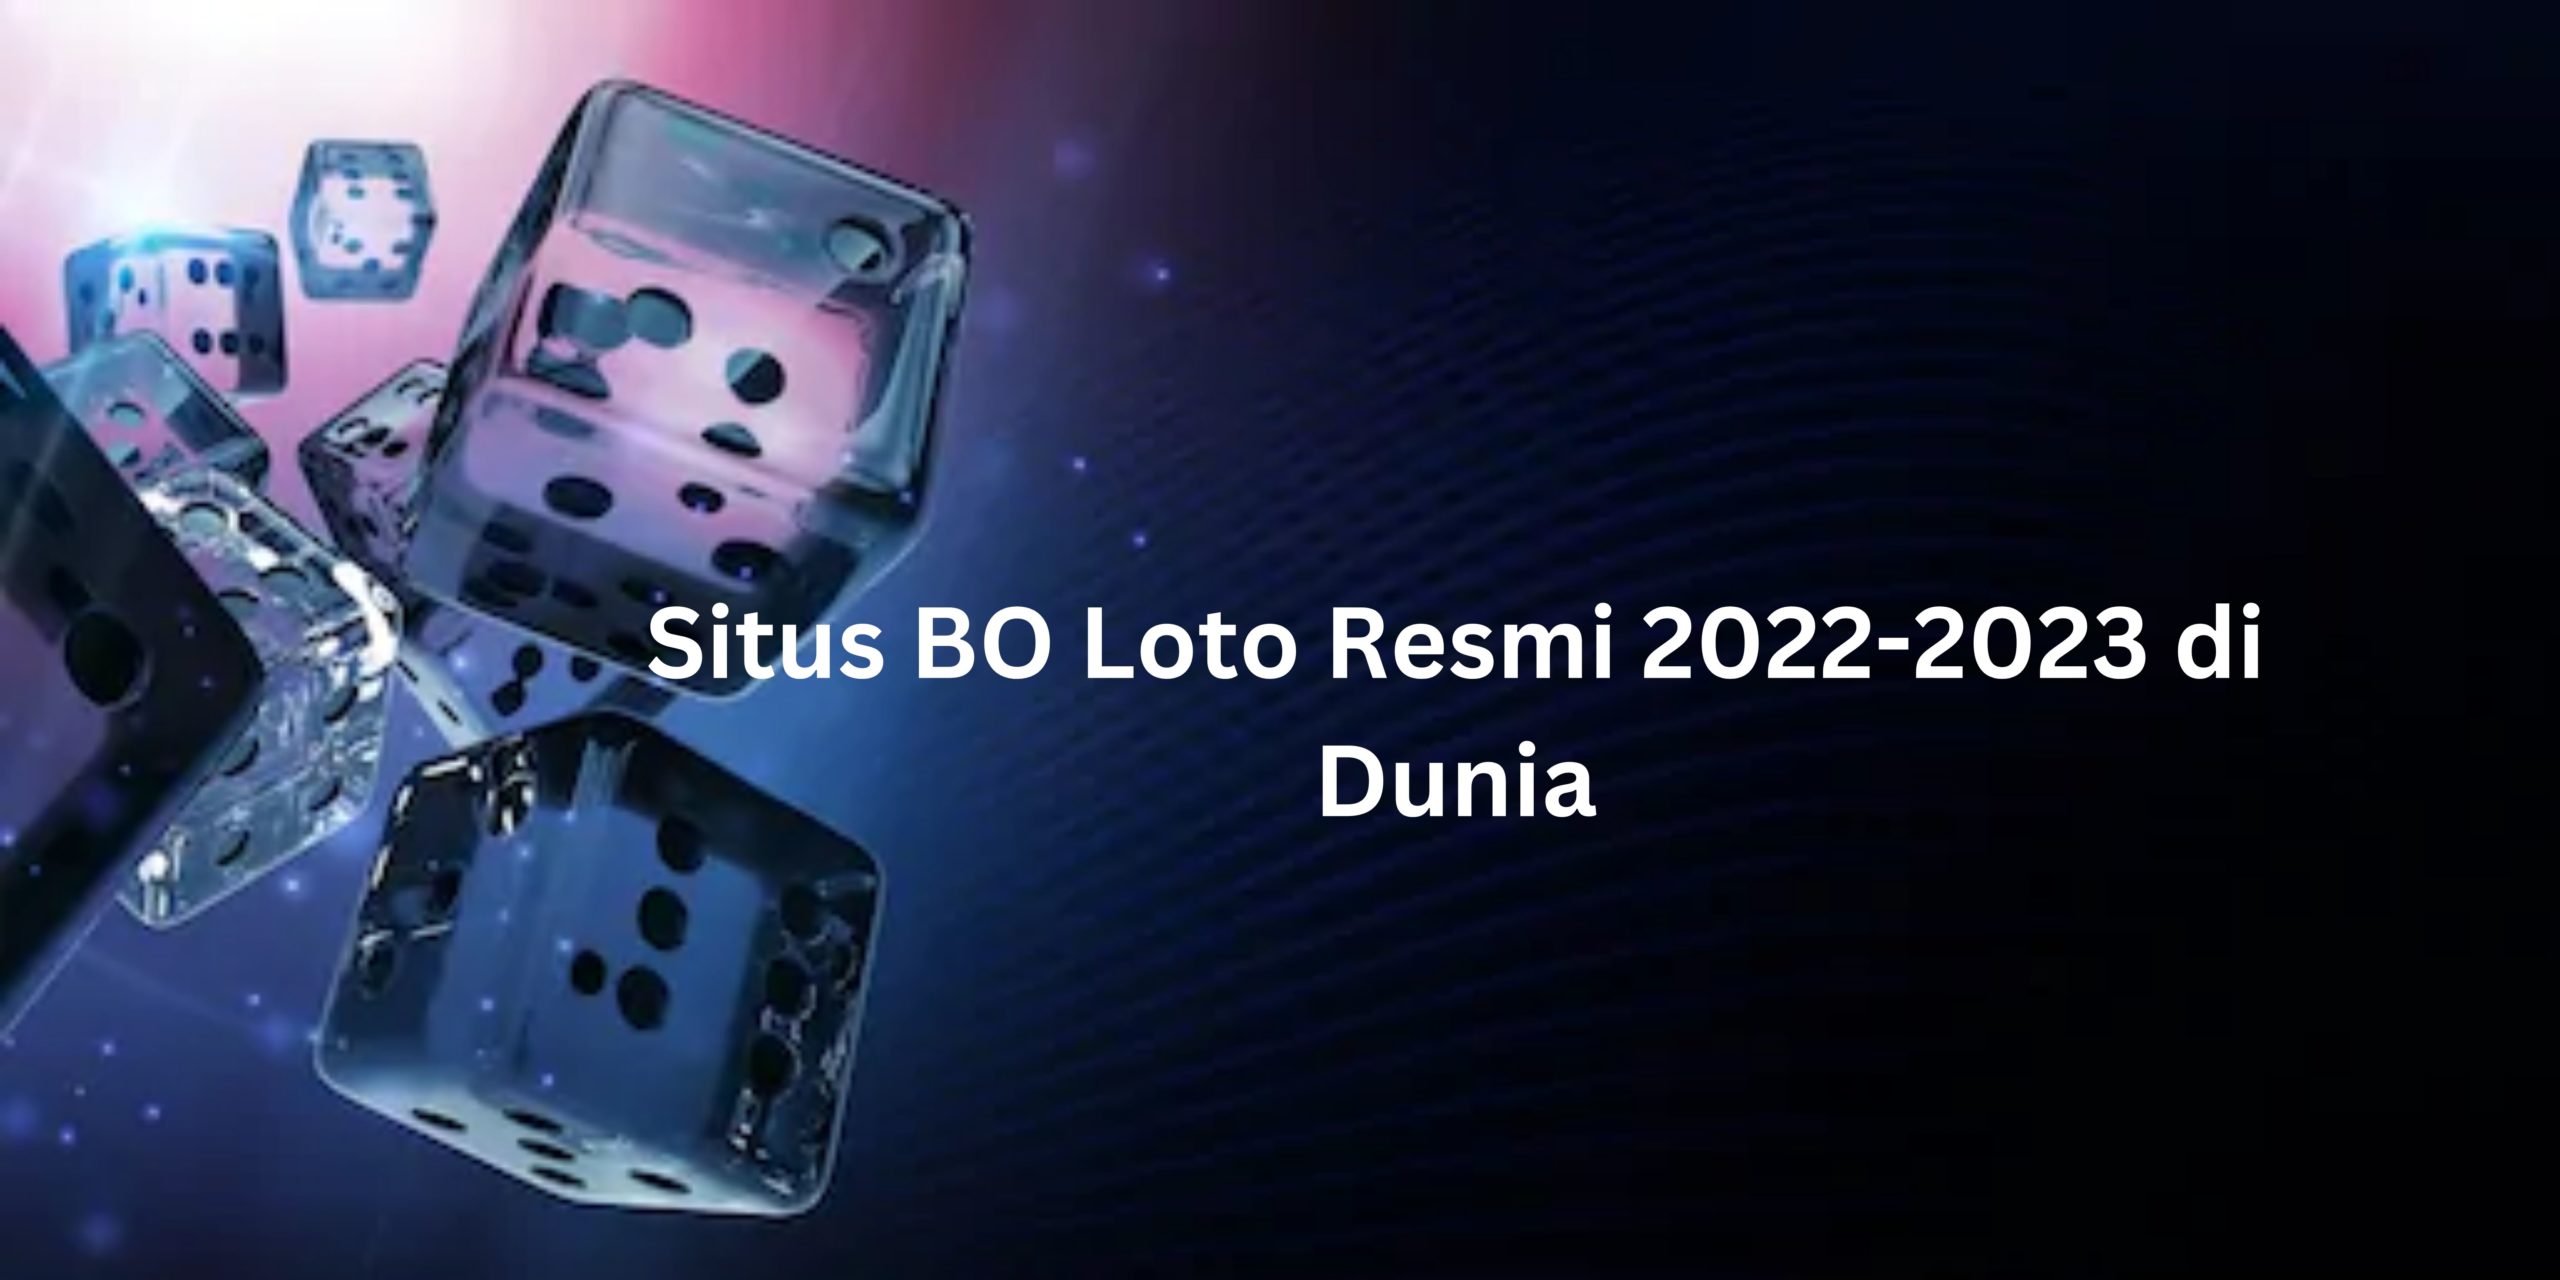 Situs BO Loto Resmi 2022-2023 di Dunia